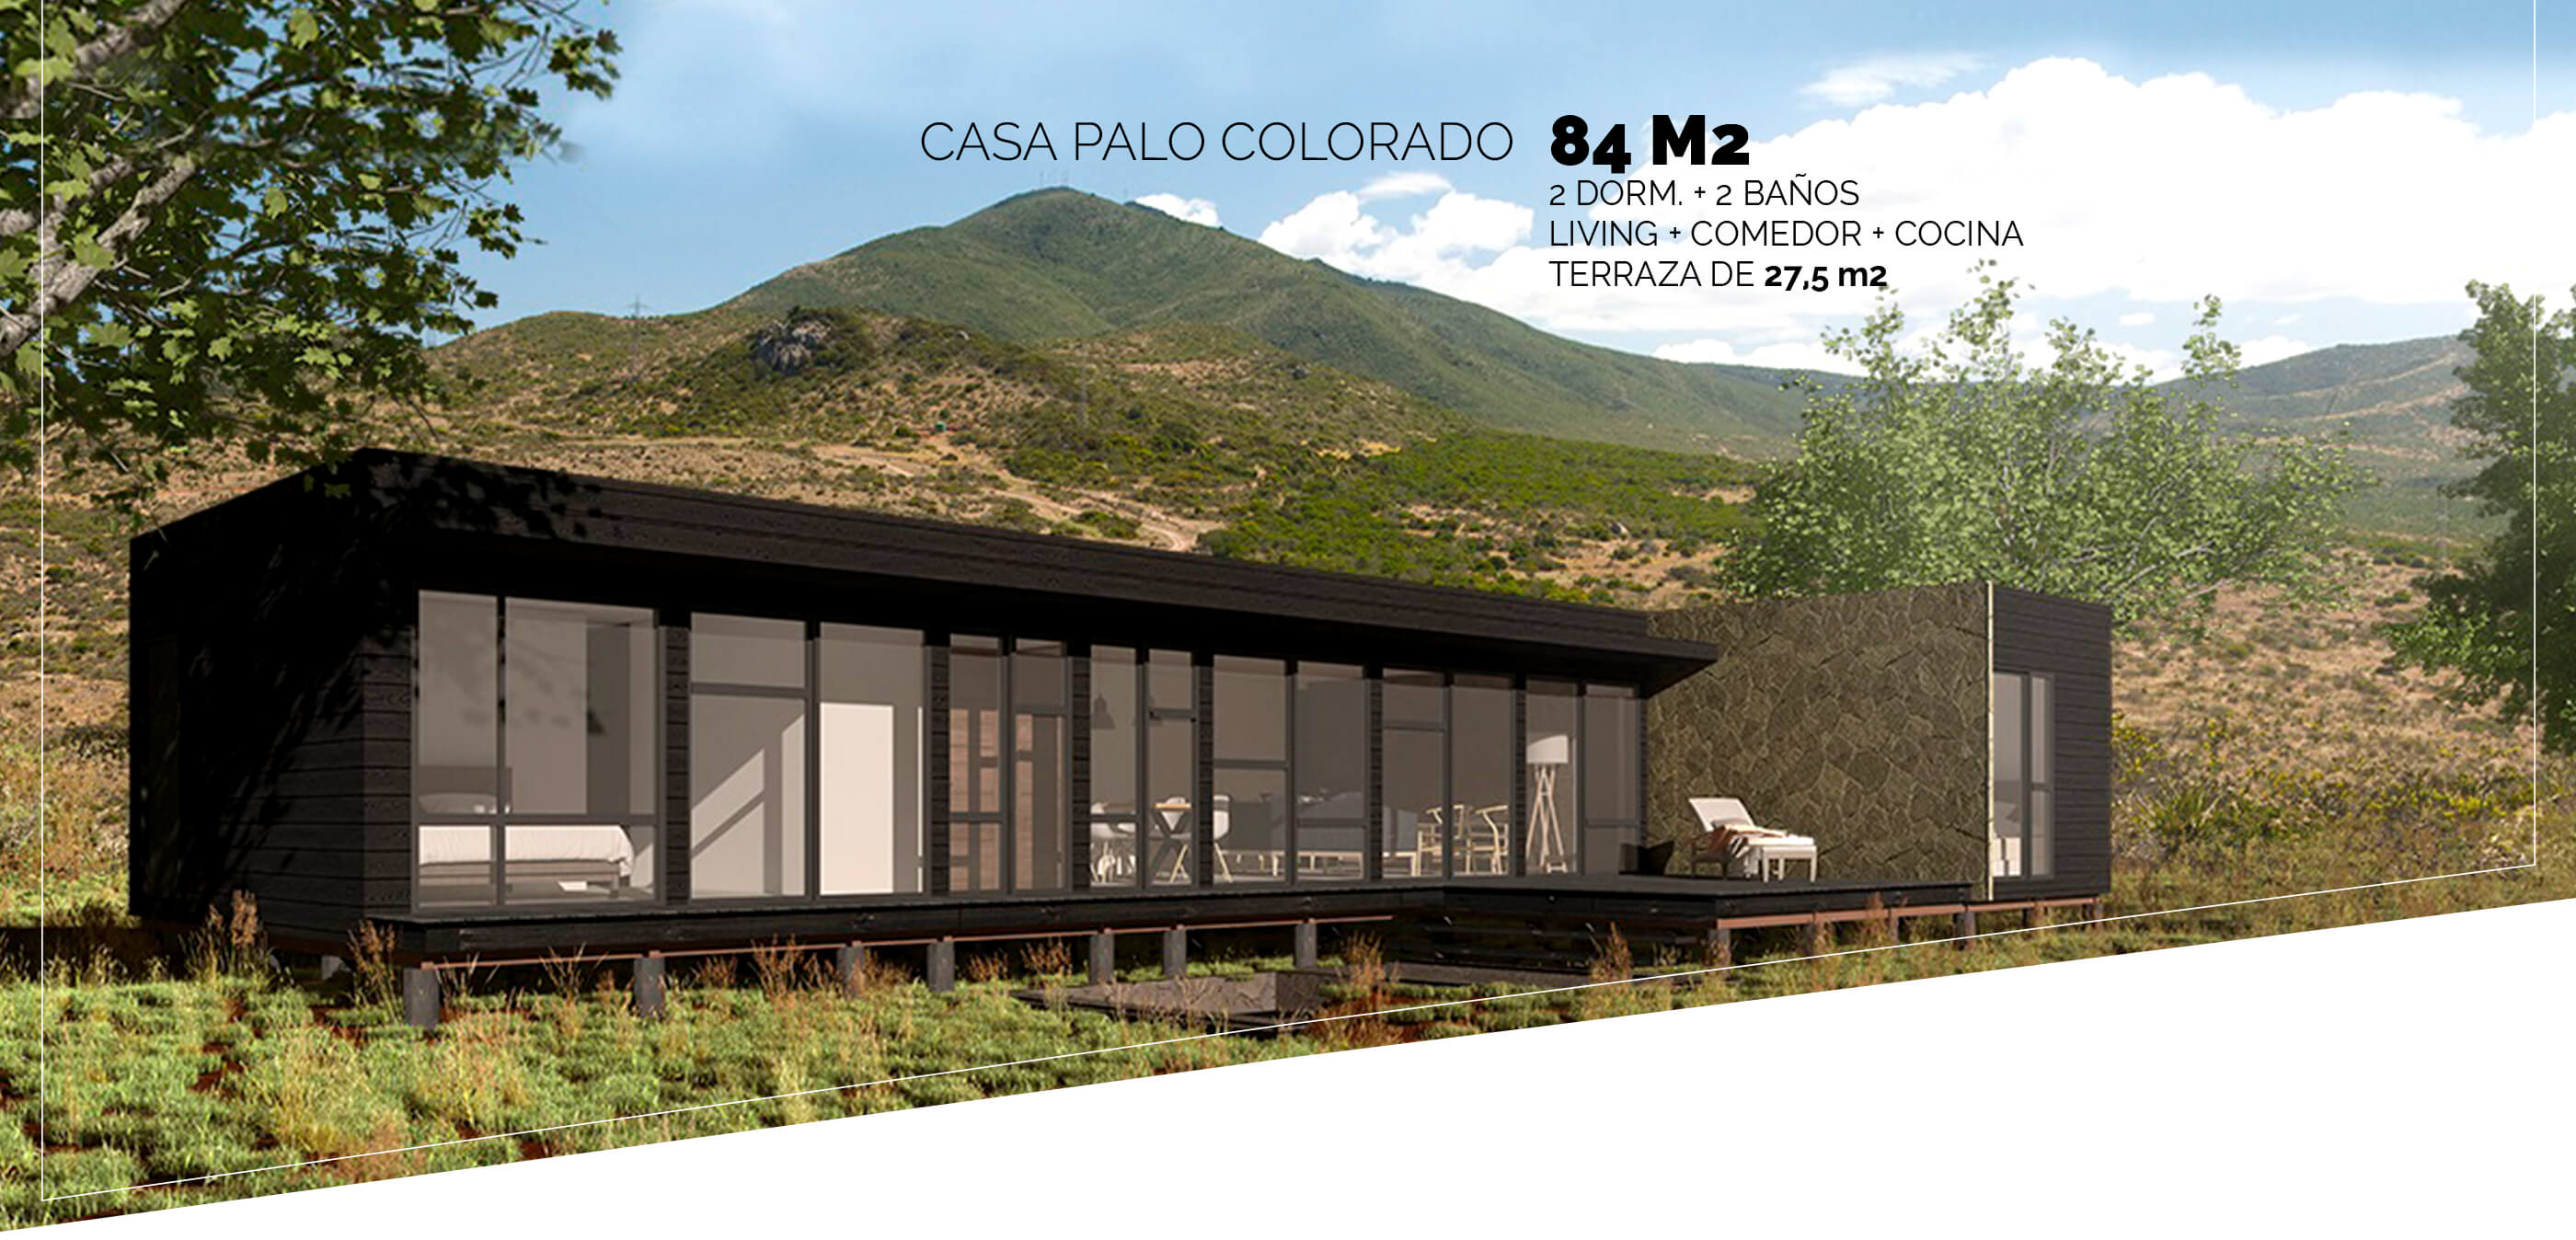 Casa Palo Colorado